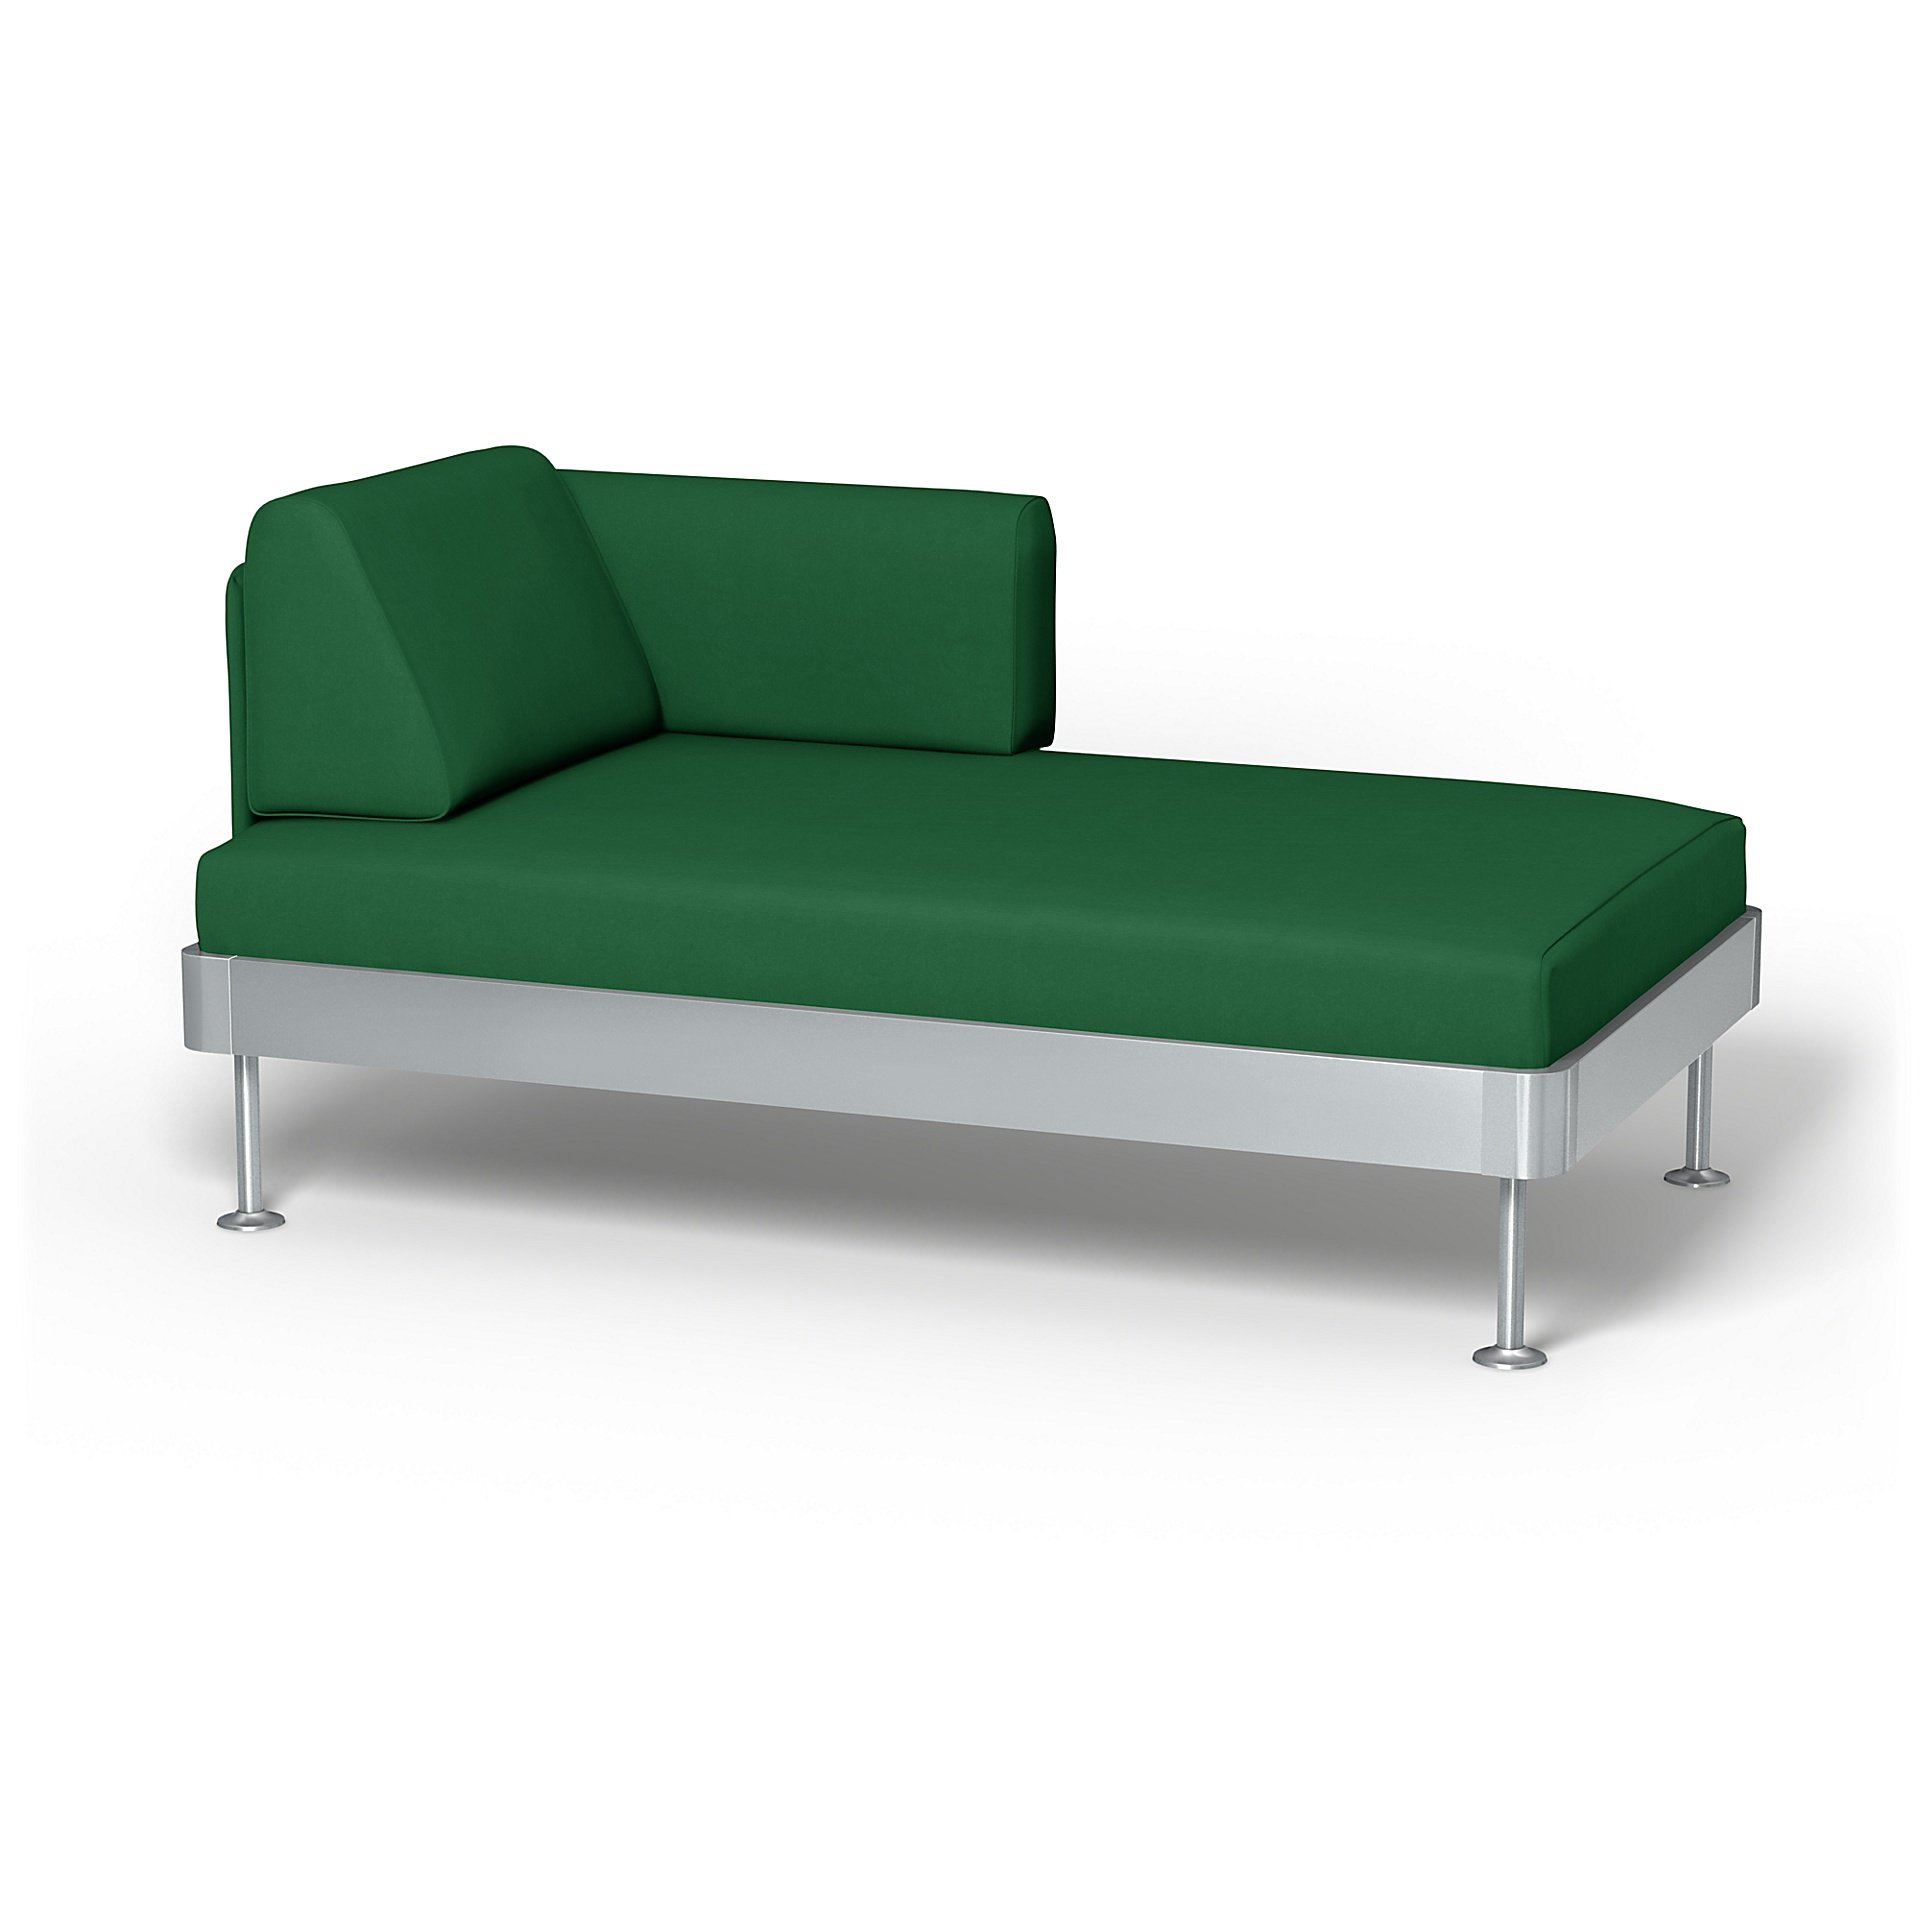 IKEA - Delaktig Chaise Longue Cover, Abundant Green, Velvet - Bemz